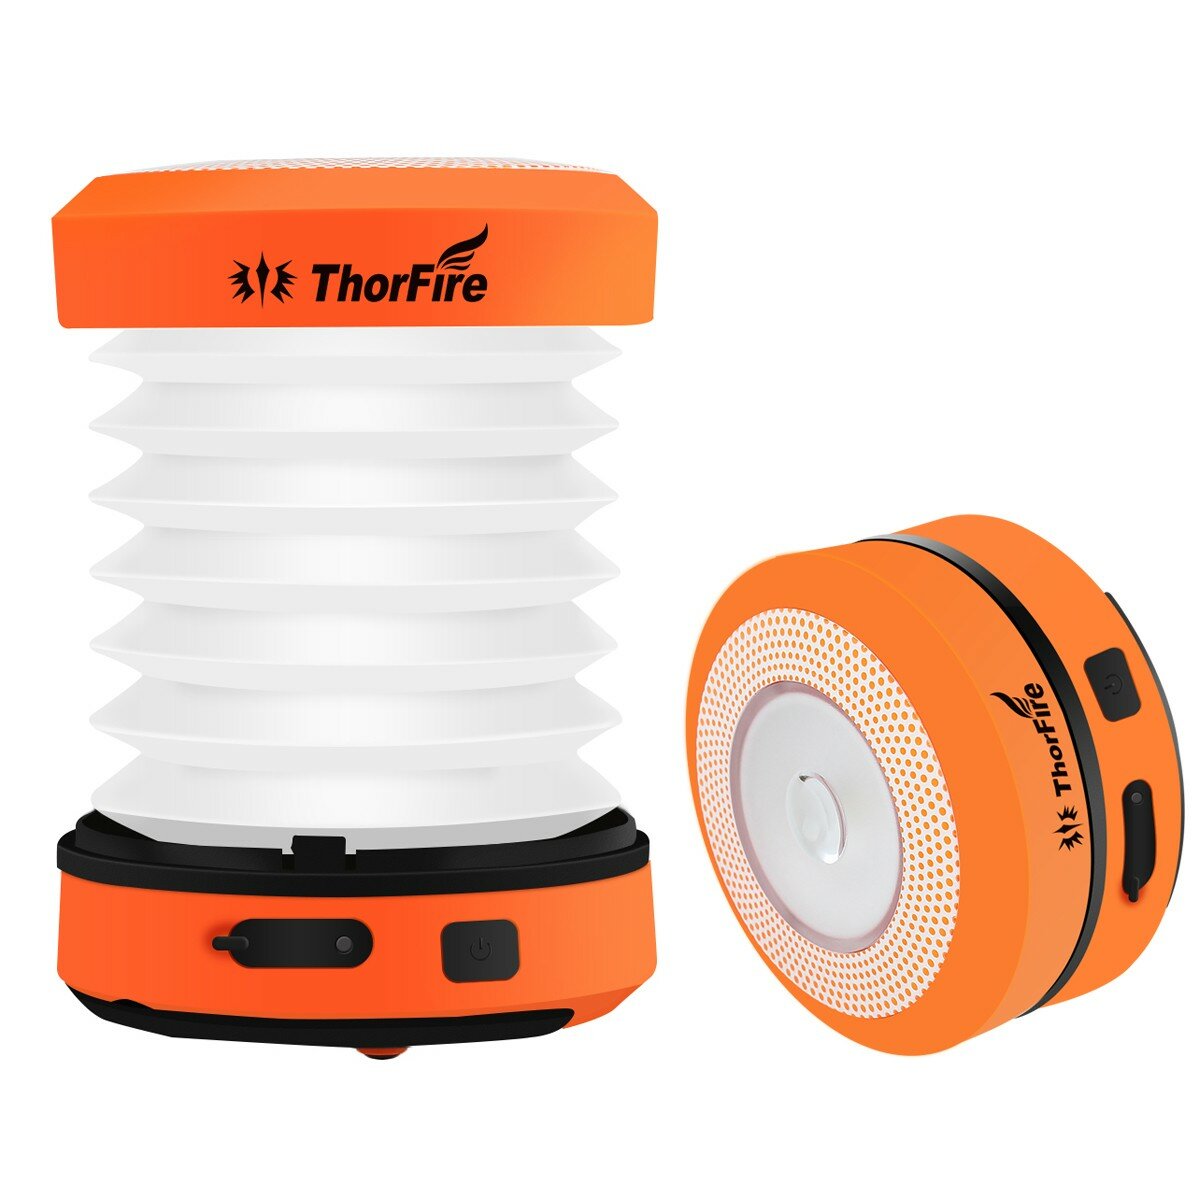 Linternas de camping LED ThorFire CL01 con manivela y carga USB, lámparas de tienda plegables y linternas de emergencia para exteriores